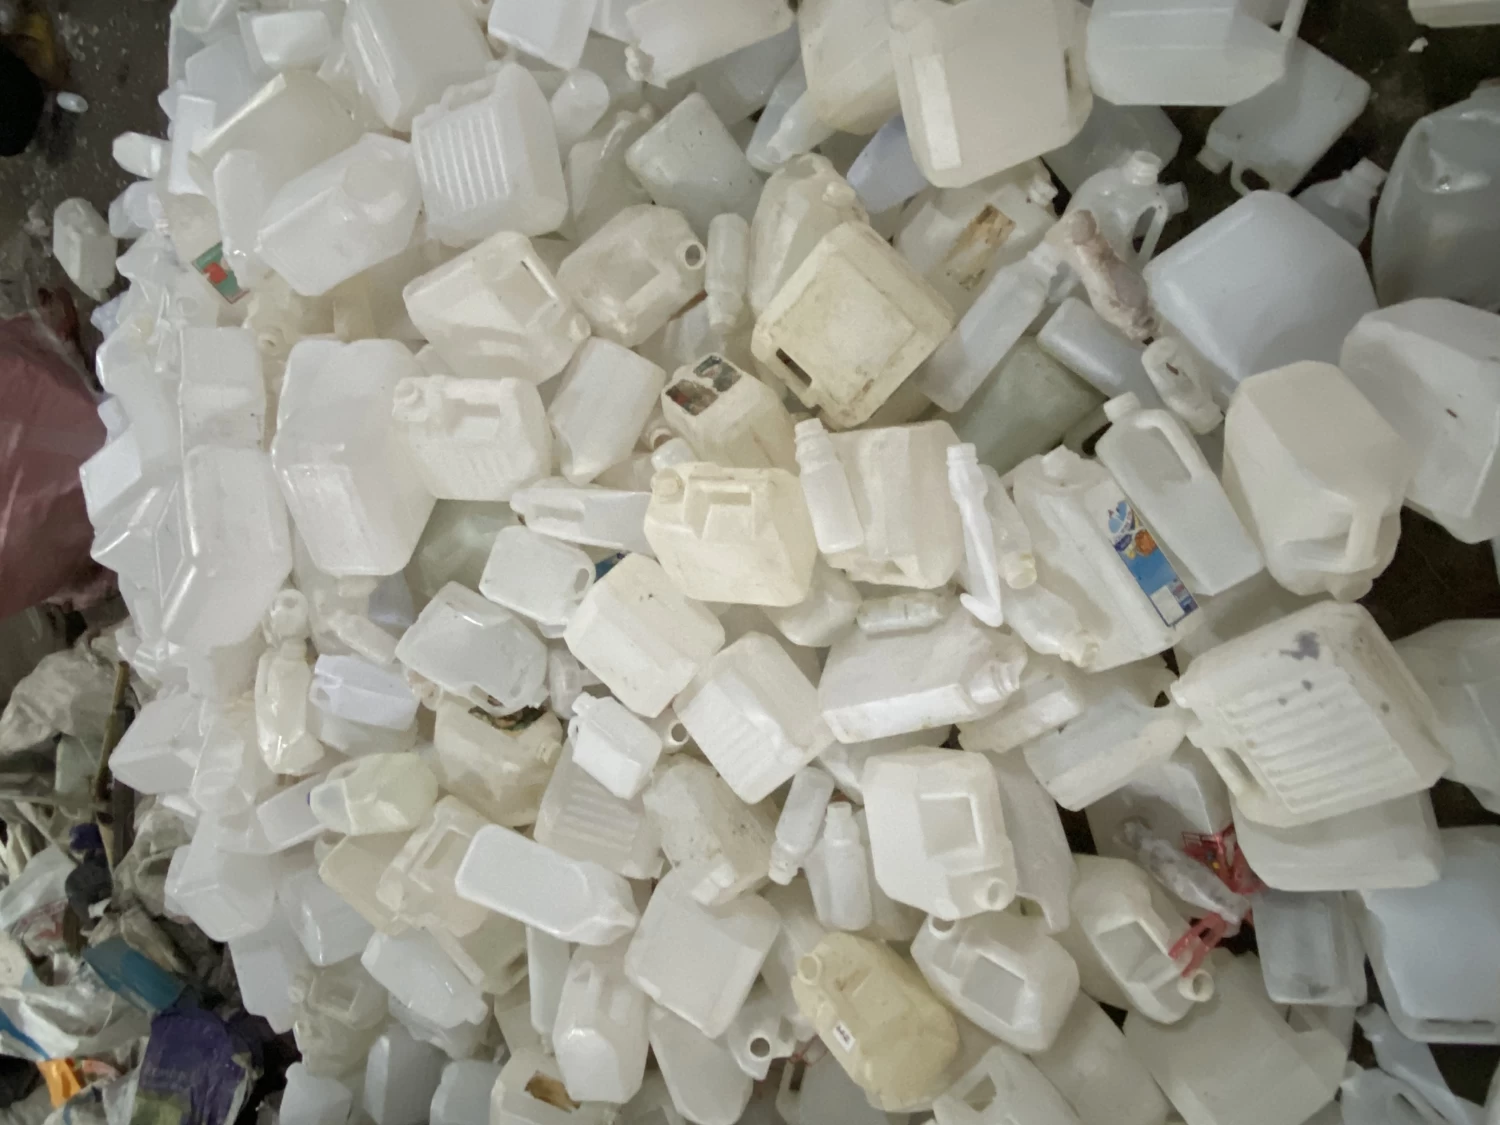 โรงงานรีไซเคิลพลาสติกวงษ์พาณิชย์ร่มเกล้า รับซื้อประมูลพลาสติก ครบวงจร